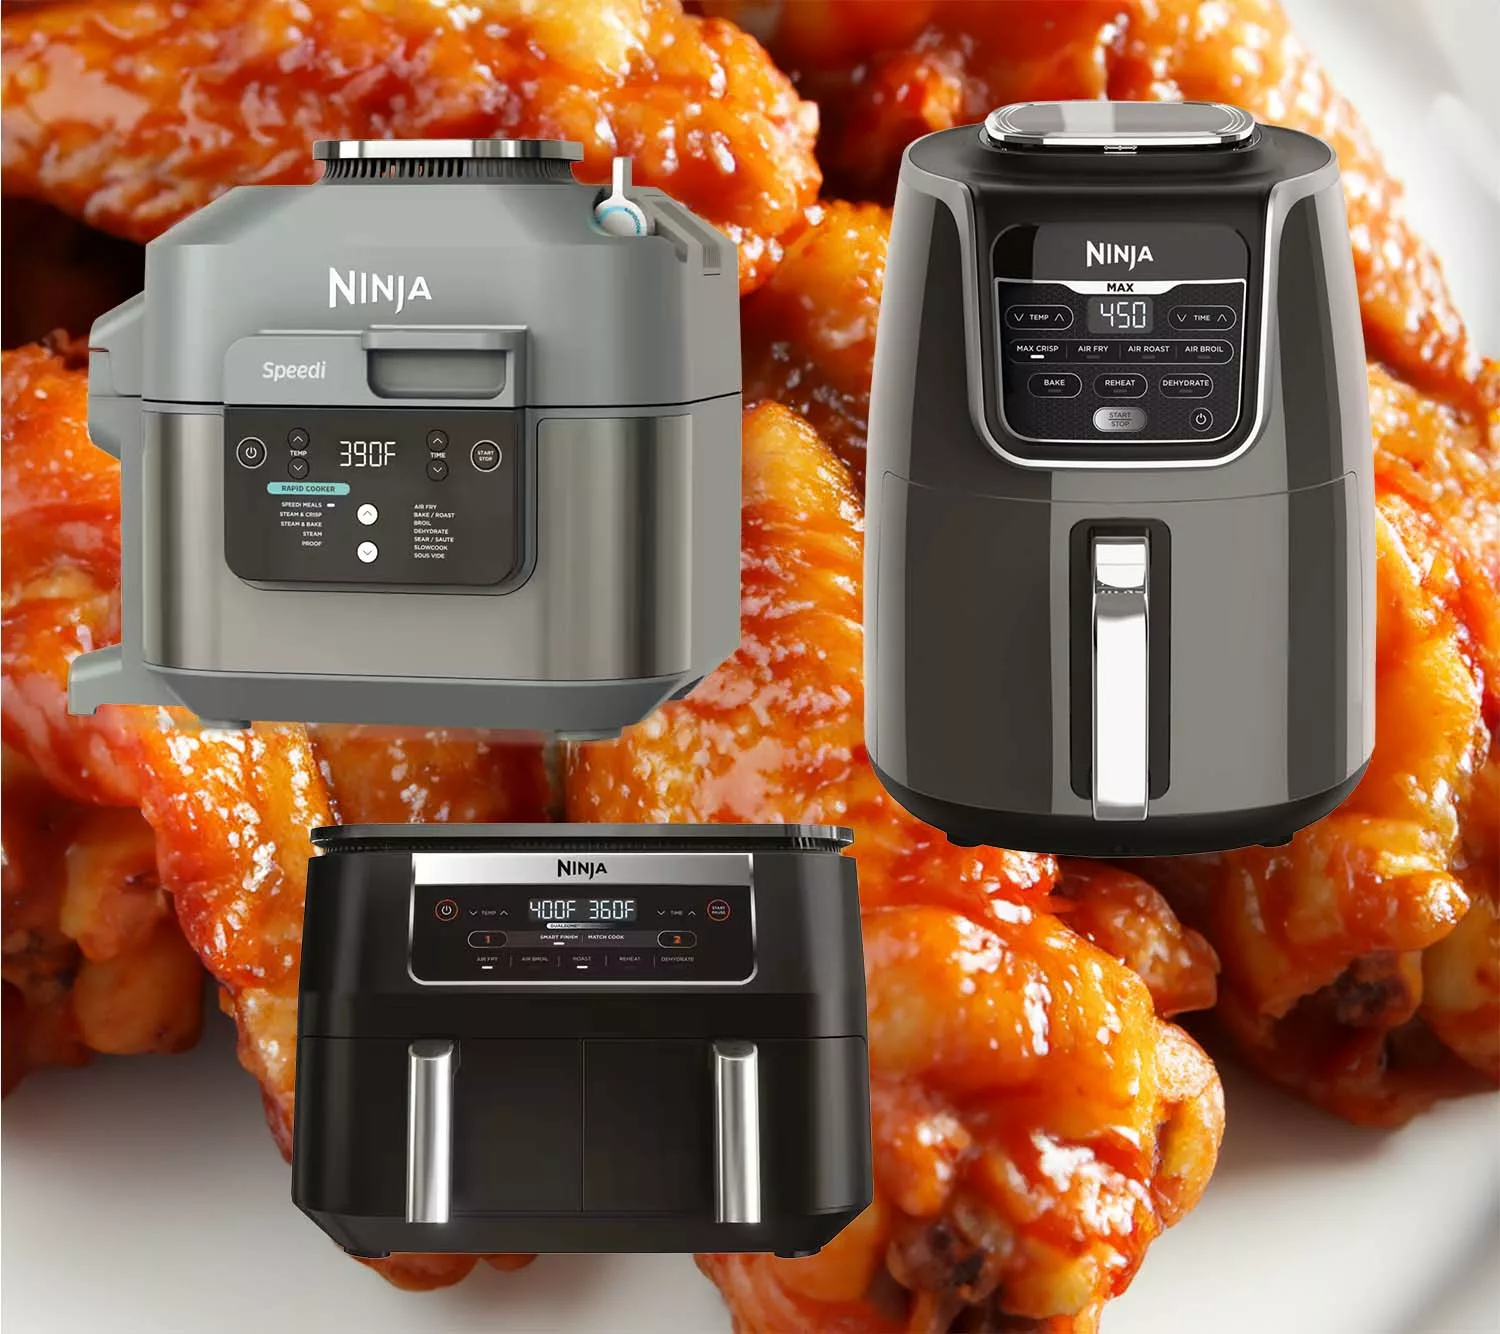 Ninja Speedi Rapid Cooker Air Fryer, Fryers